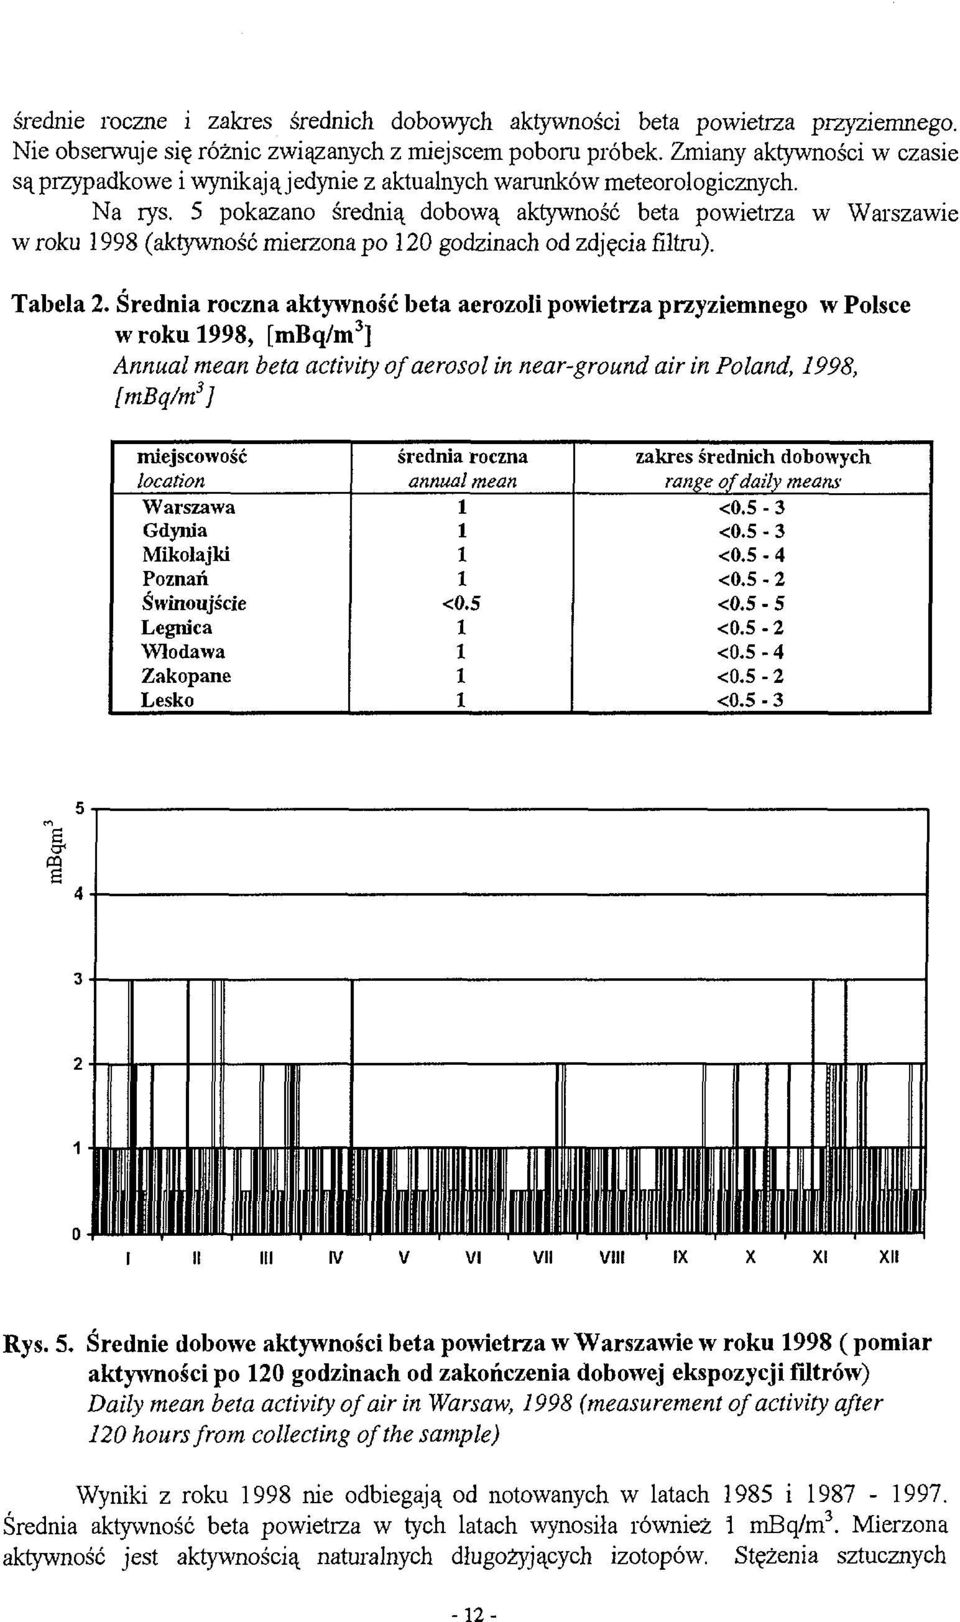 5 pokazano średnią dobową aktywność beta powietrza w Warszawie w roku 998 (aktywność mierzona po 20 godzinach od zdjęcia filtru). Tabela 2.